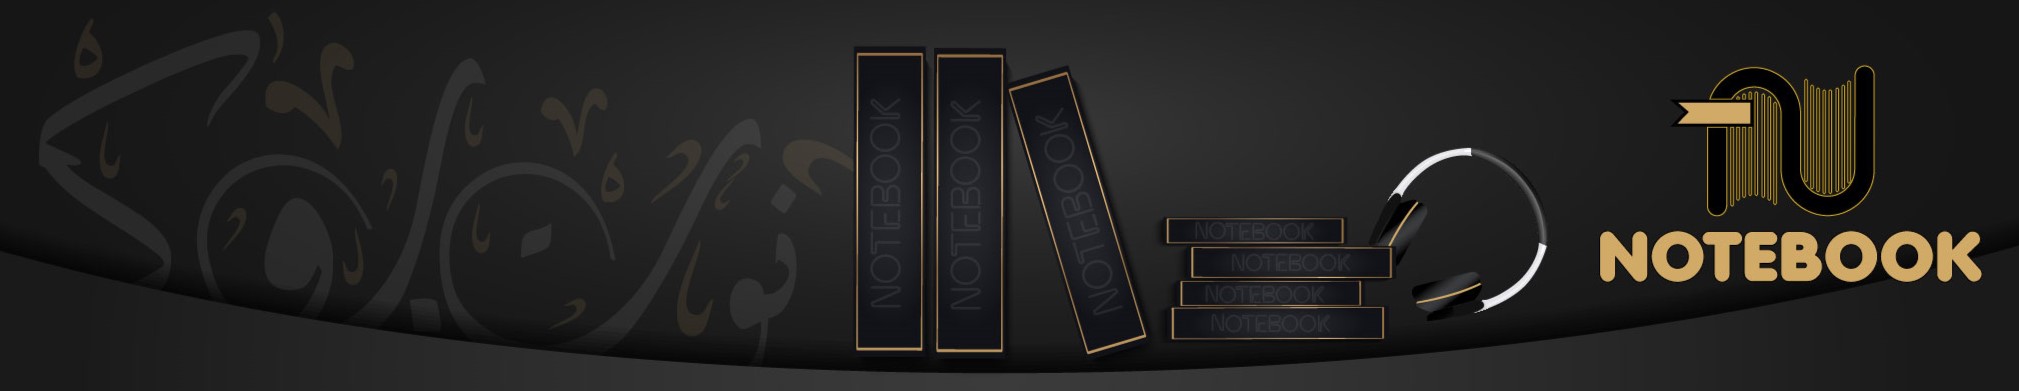 Notebook Company Logo